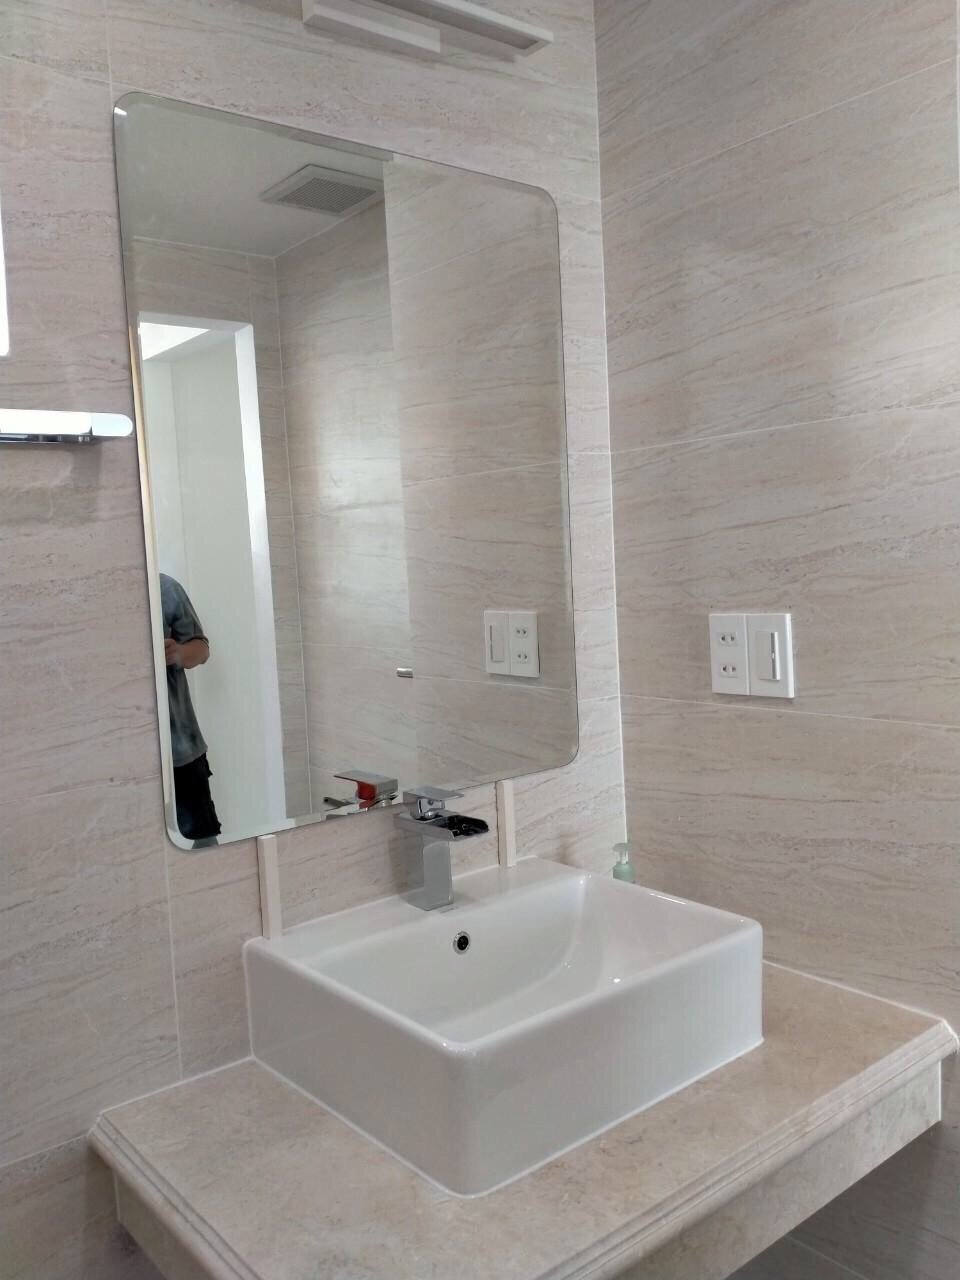 Gương nhà tắm hình chữ nhật mài vát cạnh bo góc